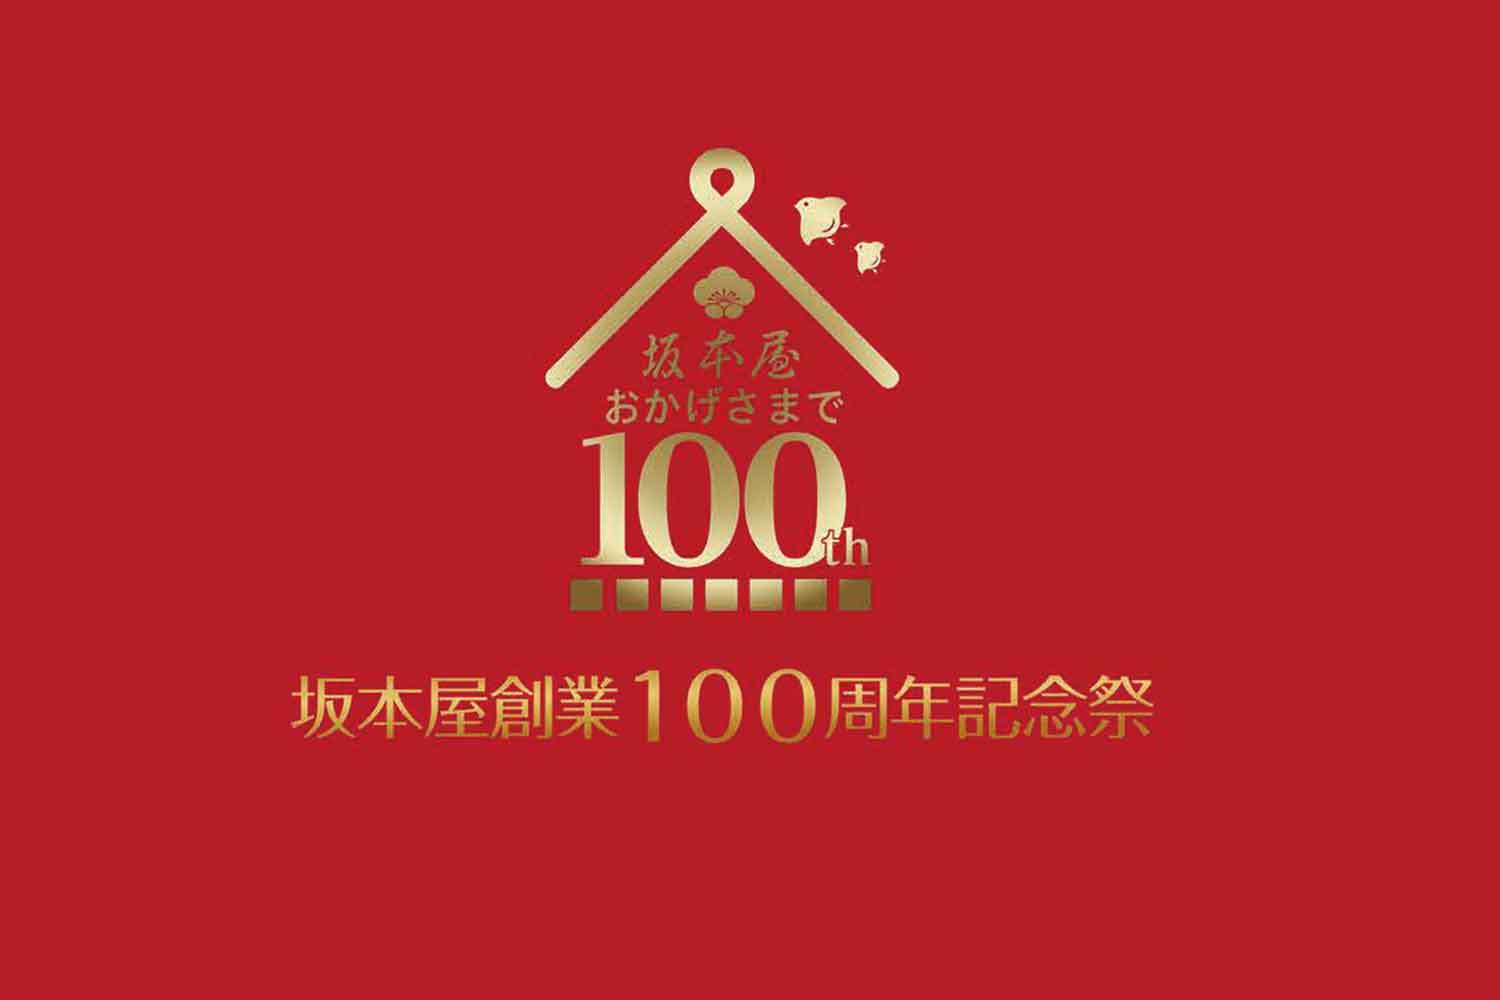 坂本屋創業100周年記念祭